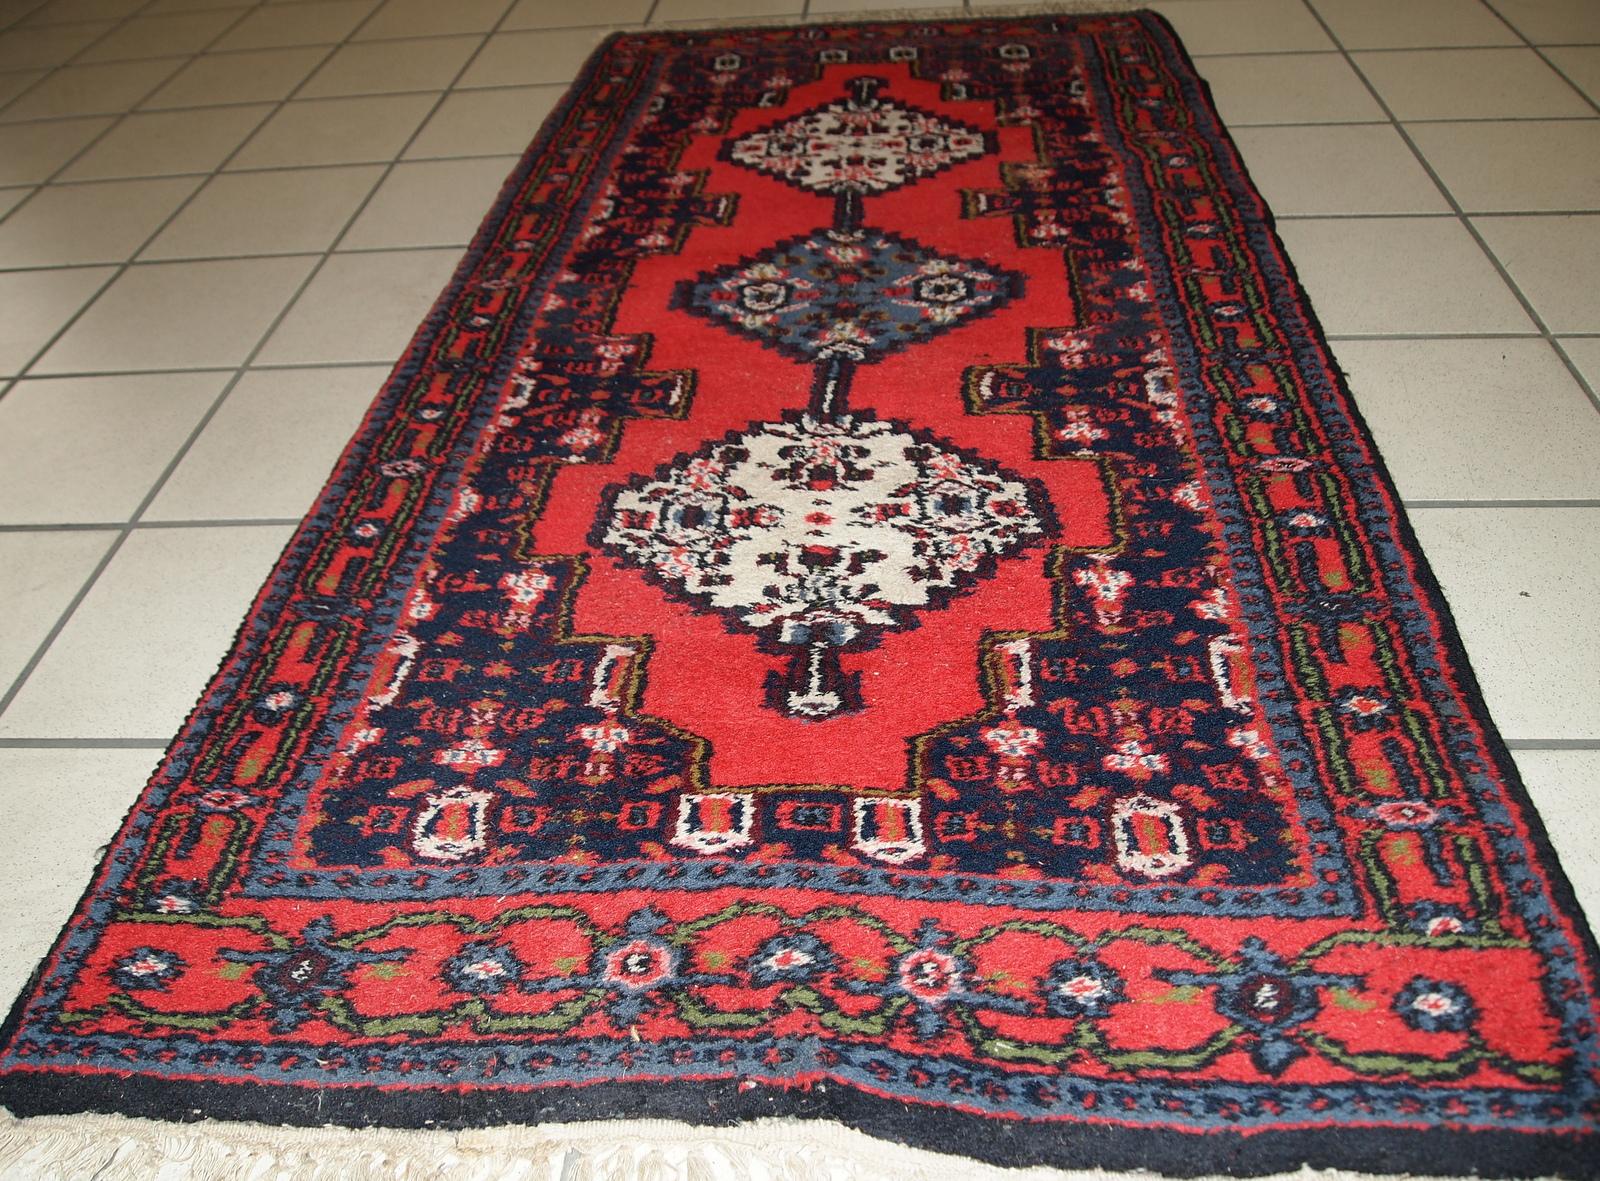 Handgefertigter Vintage-Teppich im Hamadan-Stil in leuchtender roter Farbe. Der Teppich ist in einem guten Originalzustand vom Ende des 20. Jahrhunderts.

?-Zustand: original gut,

-ca. 1970er Jahre,

-Größe: 2,2' x 4,5' (69cm x